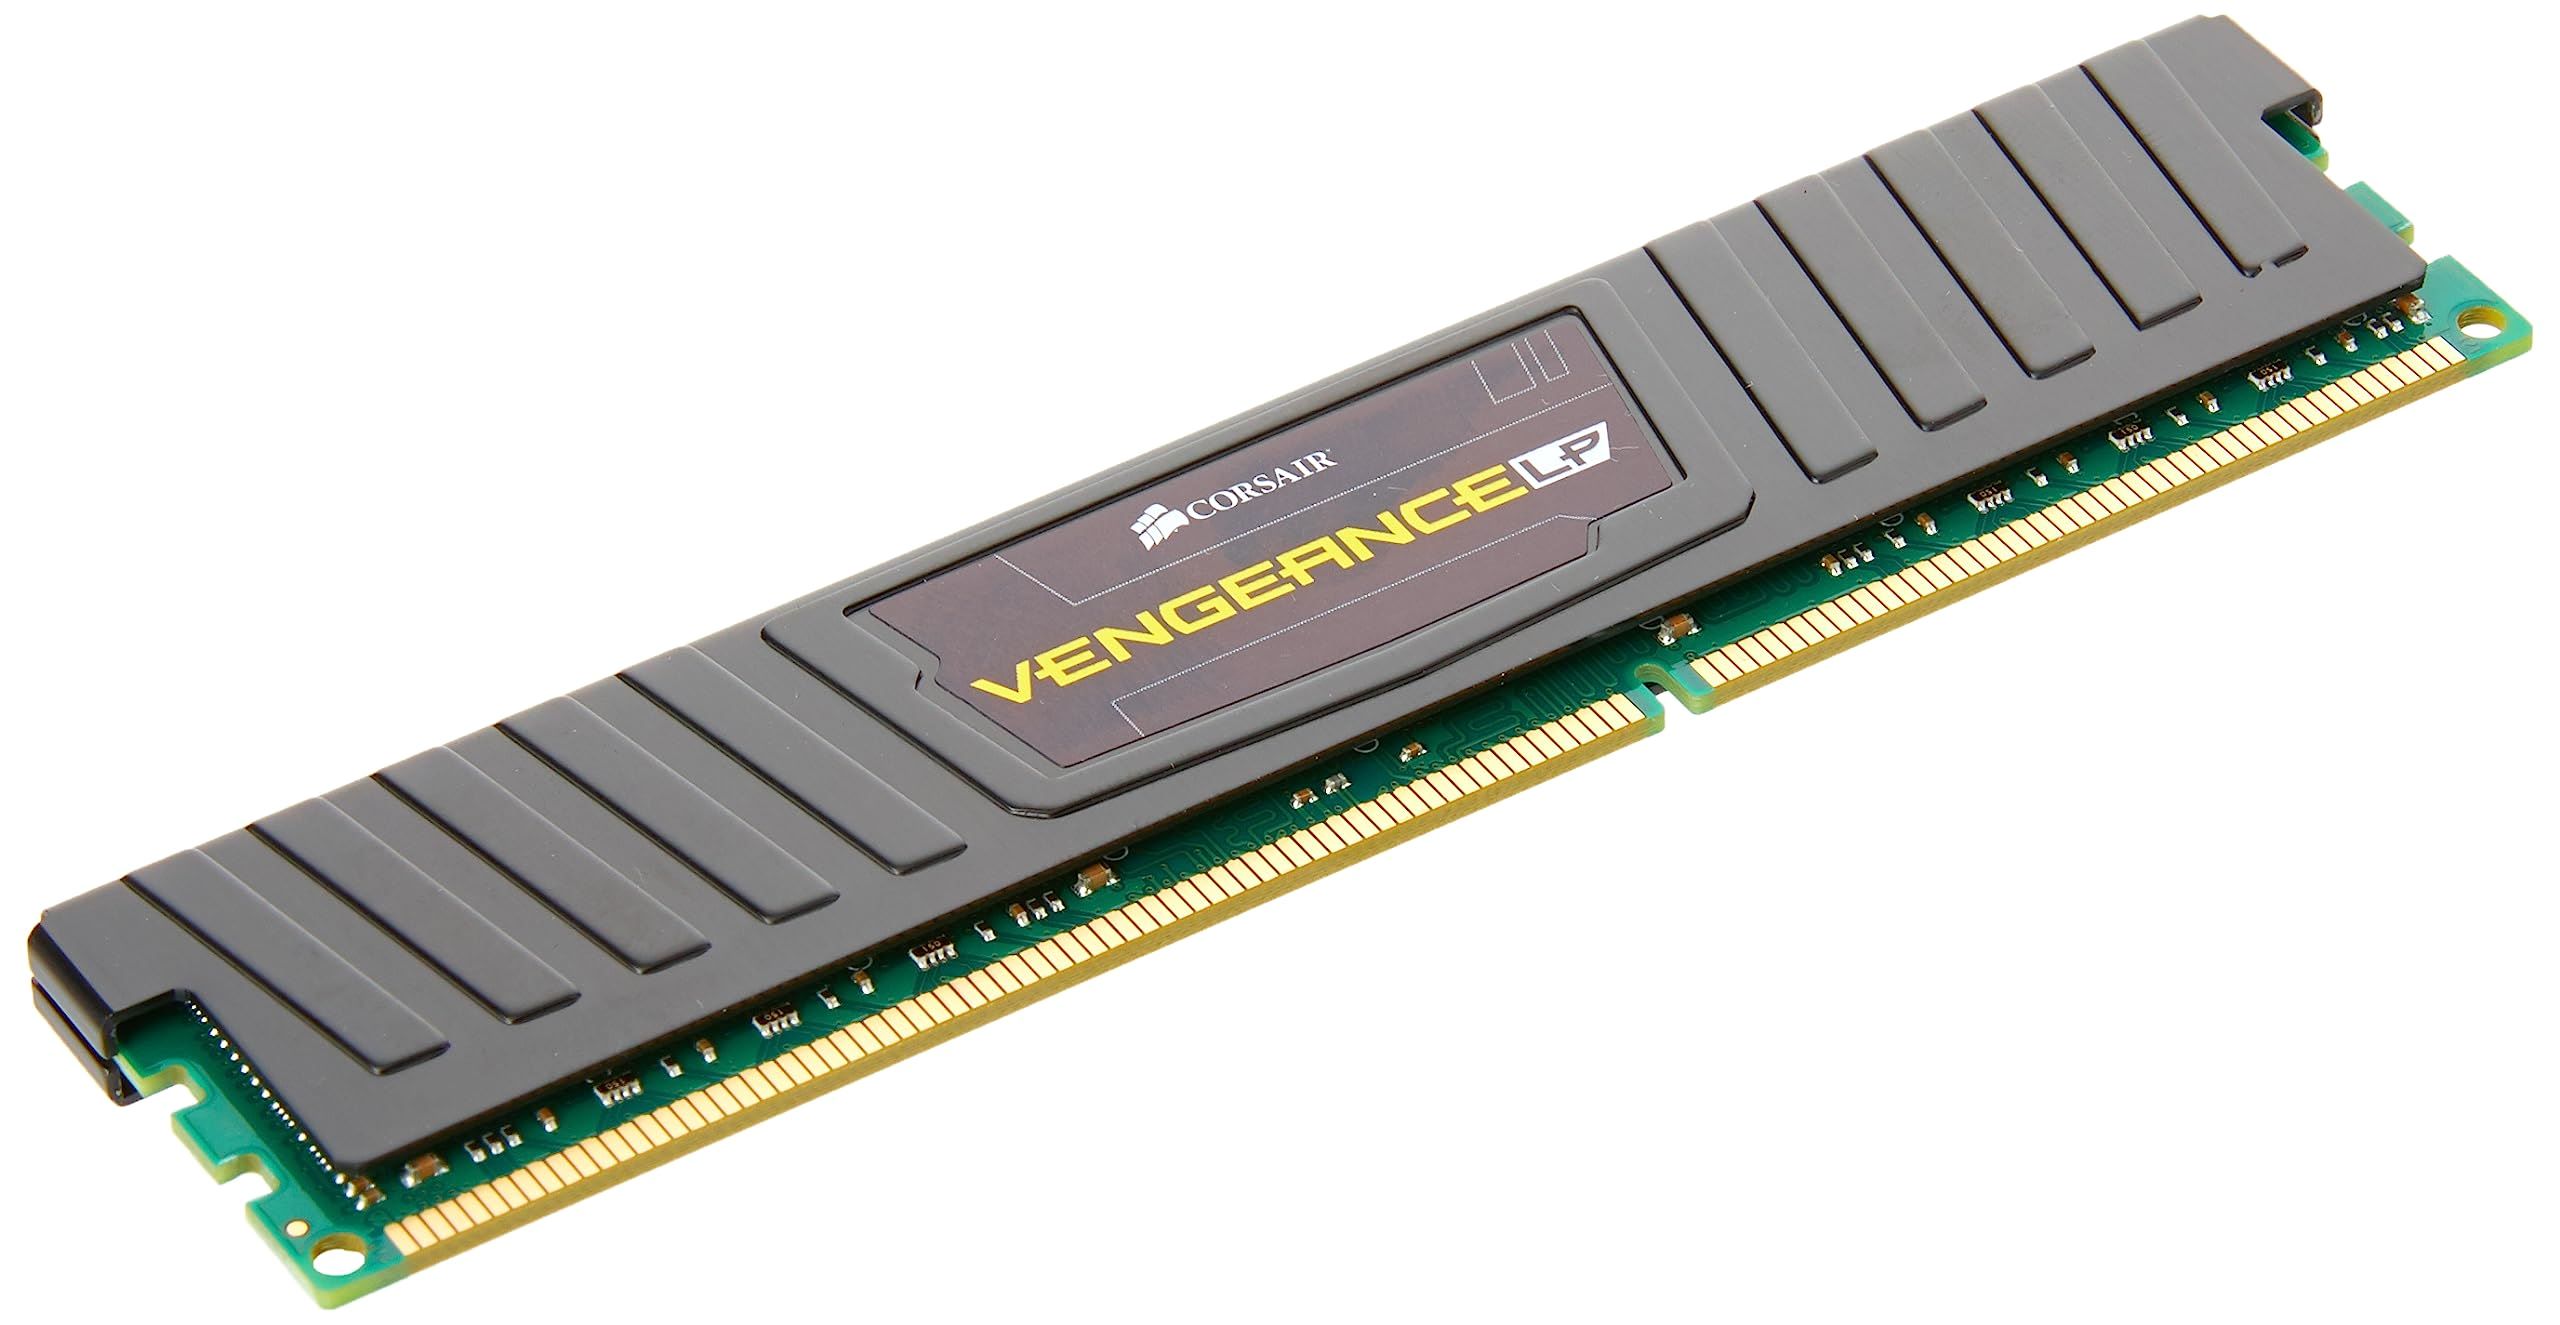  Yongxinsheng DDR3 16GB Kit (8GBx2) Desktop RAM 1600MHz